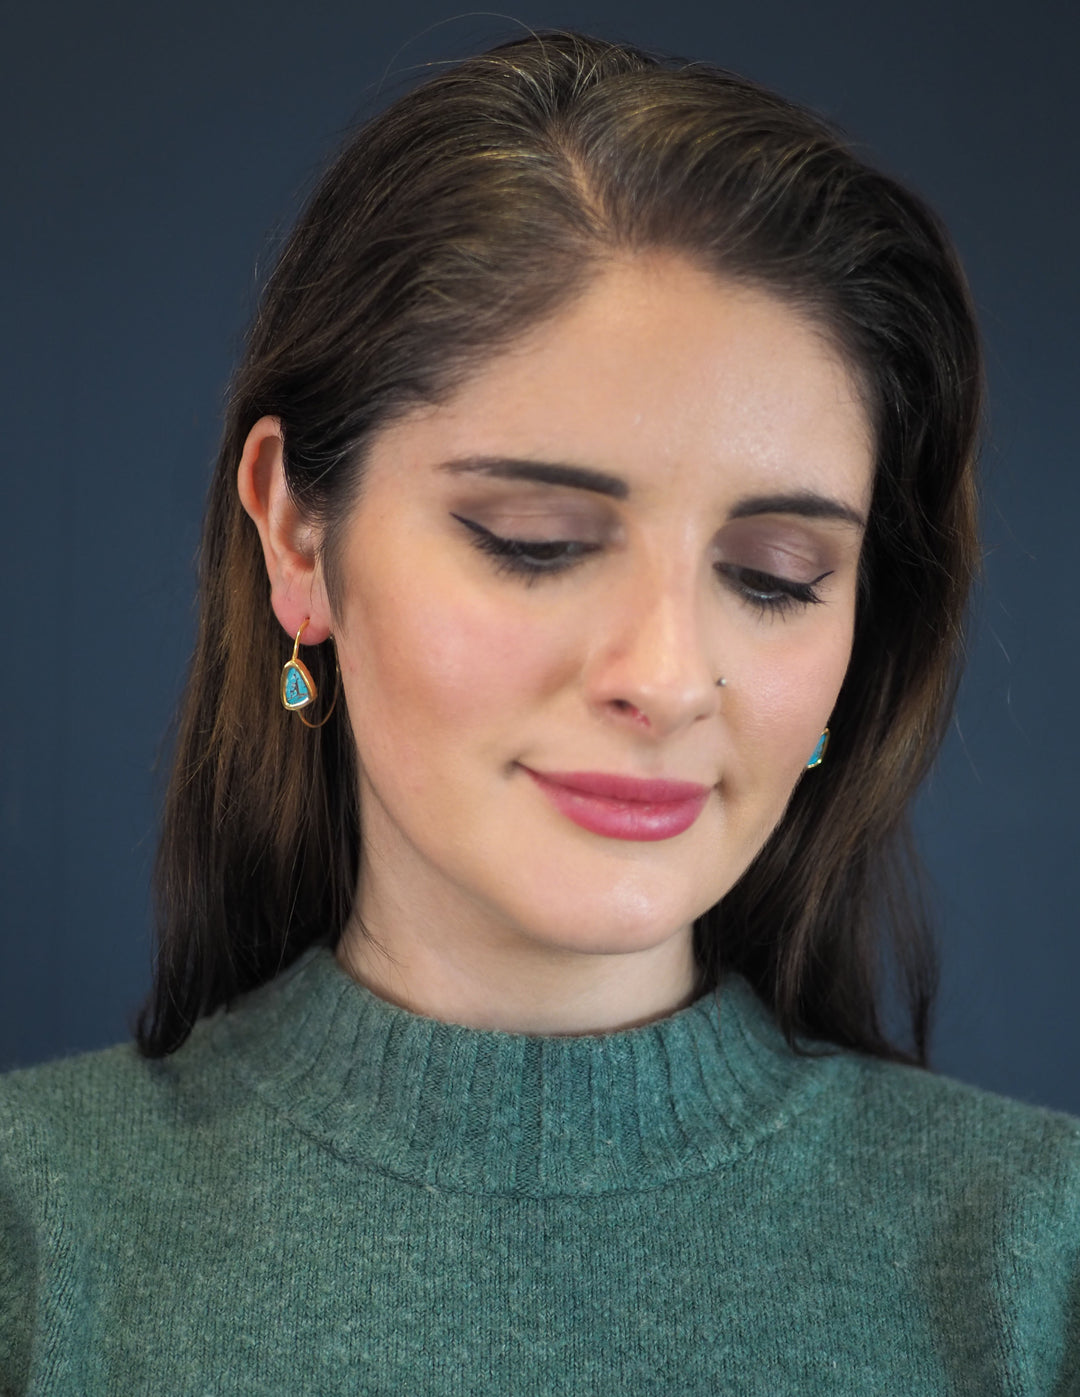 Chloe Gold & Turquoise Hoop Earrings